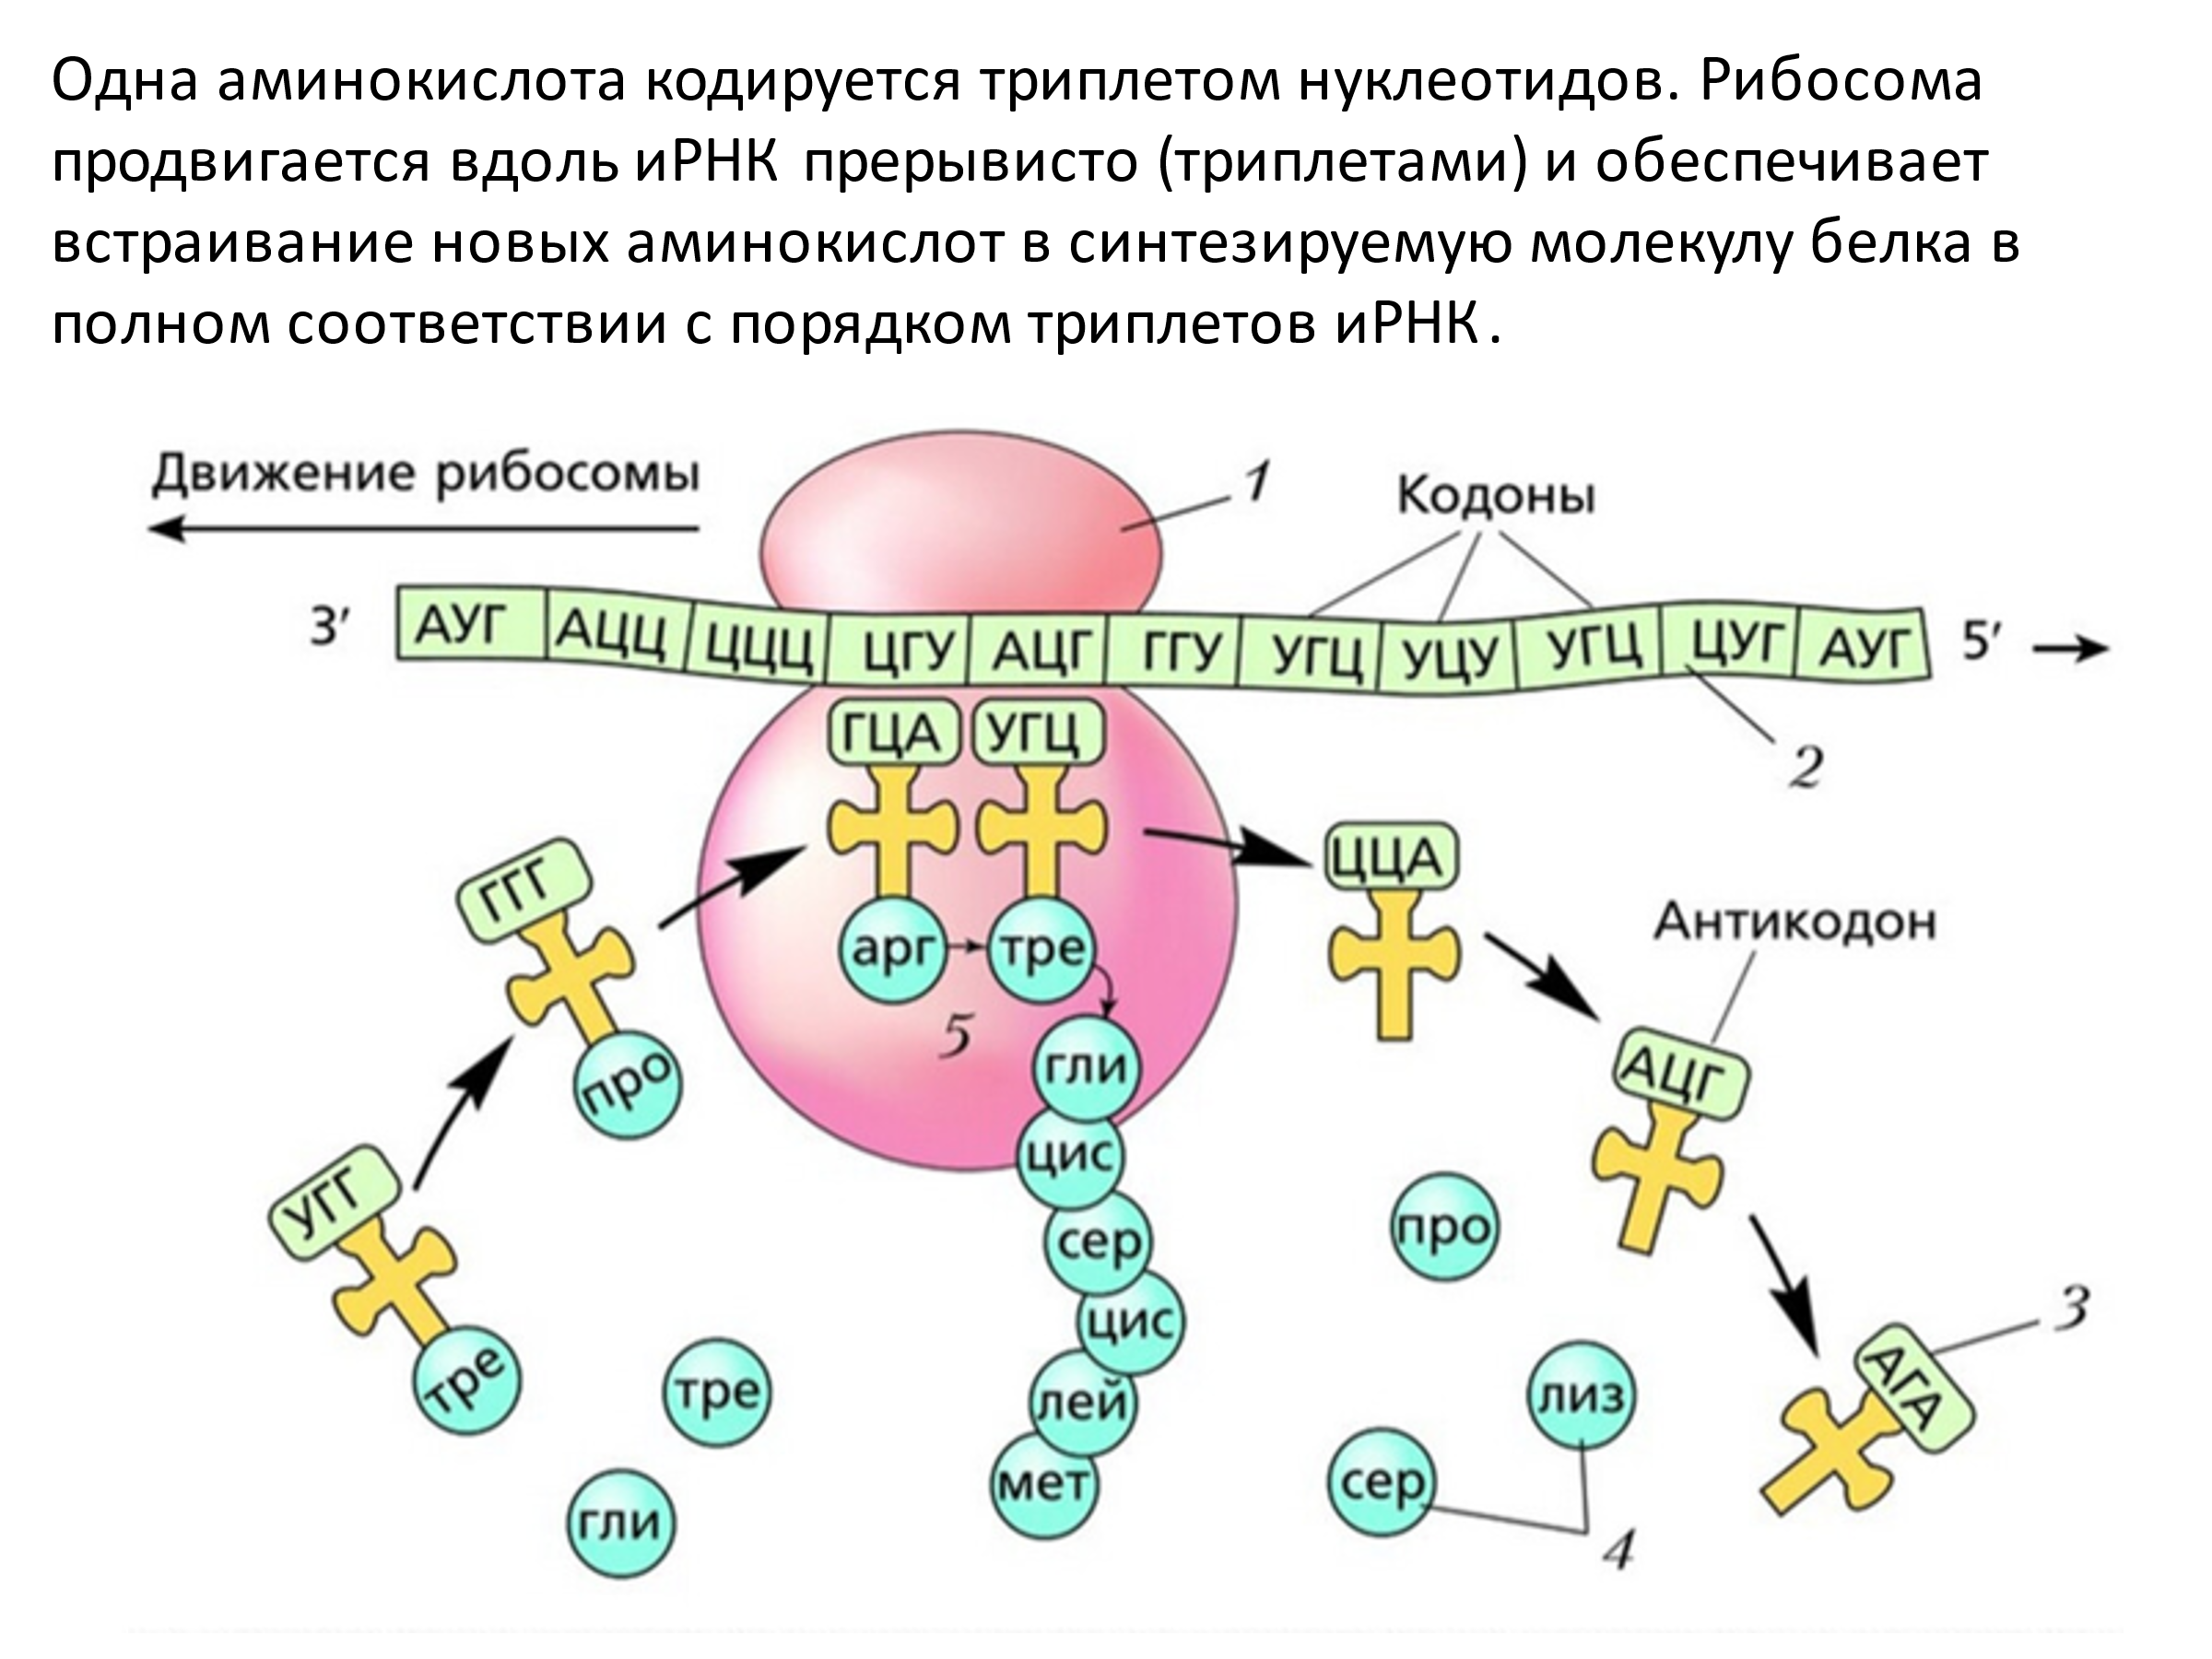 Рибосомы синтезируют полипептиды. Трансляция Биосинтез схема. Процесс синтеза белка на рибосоме схема. Этапы трансляции биосинтеза белка схема. Схема синтеза белка в рибосоме трансляция.